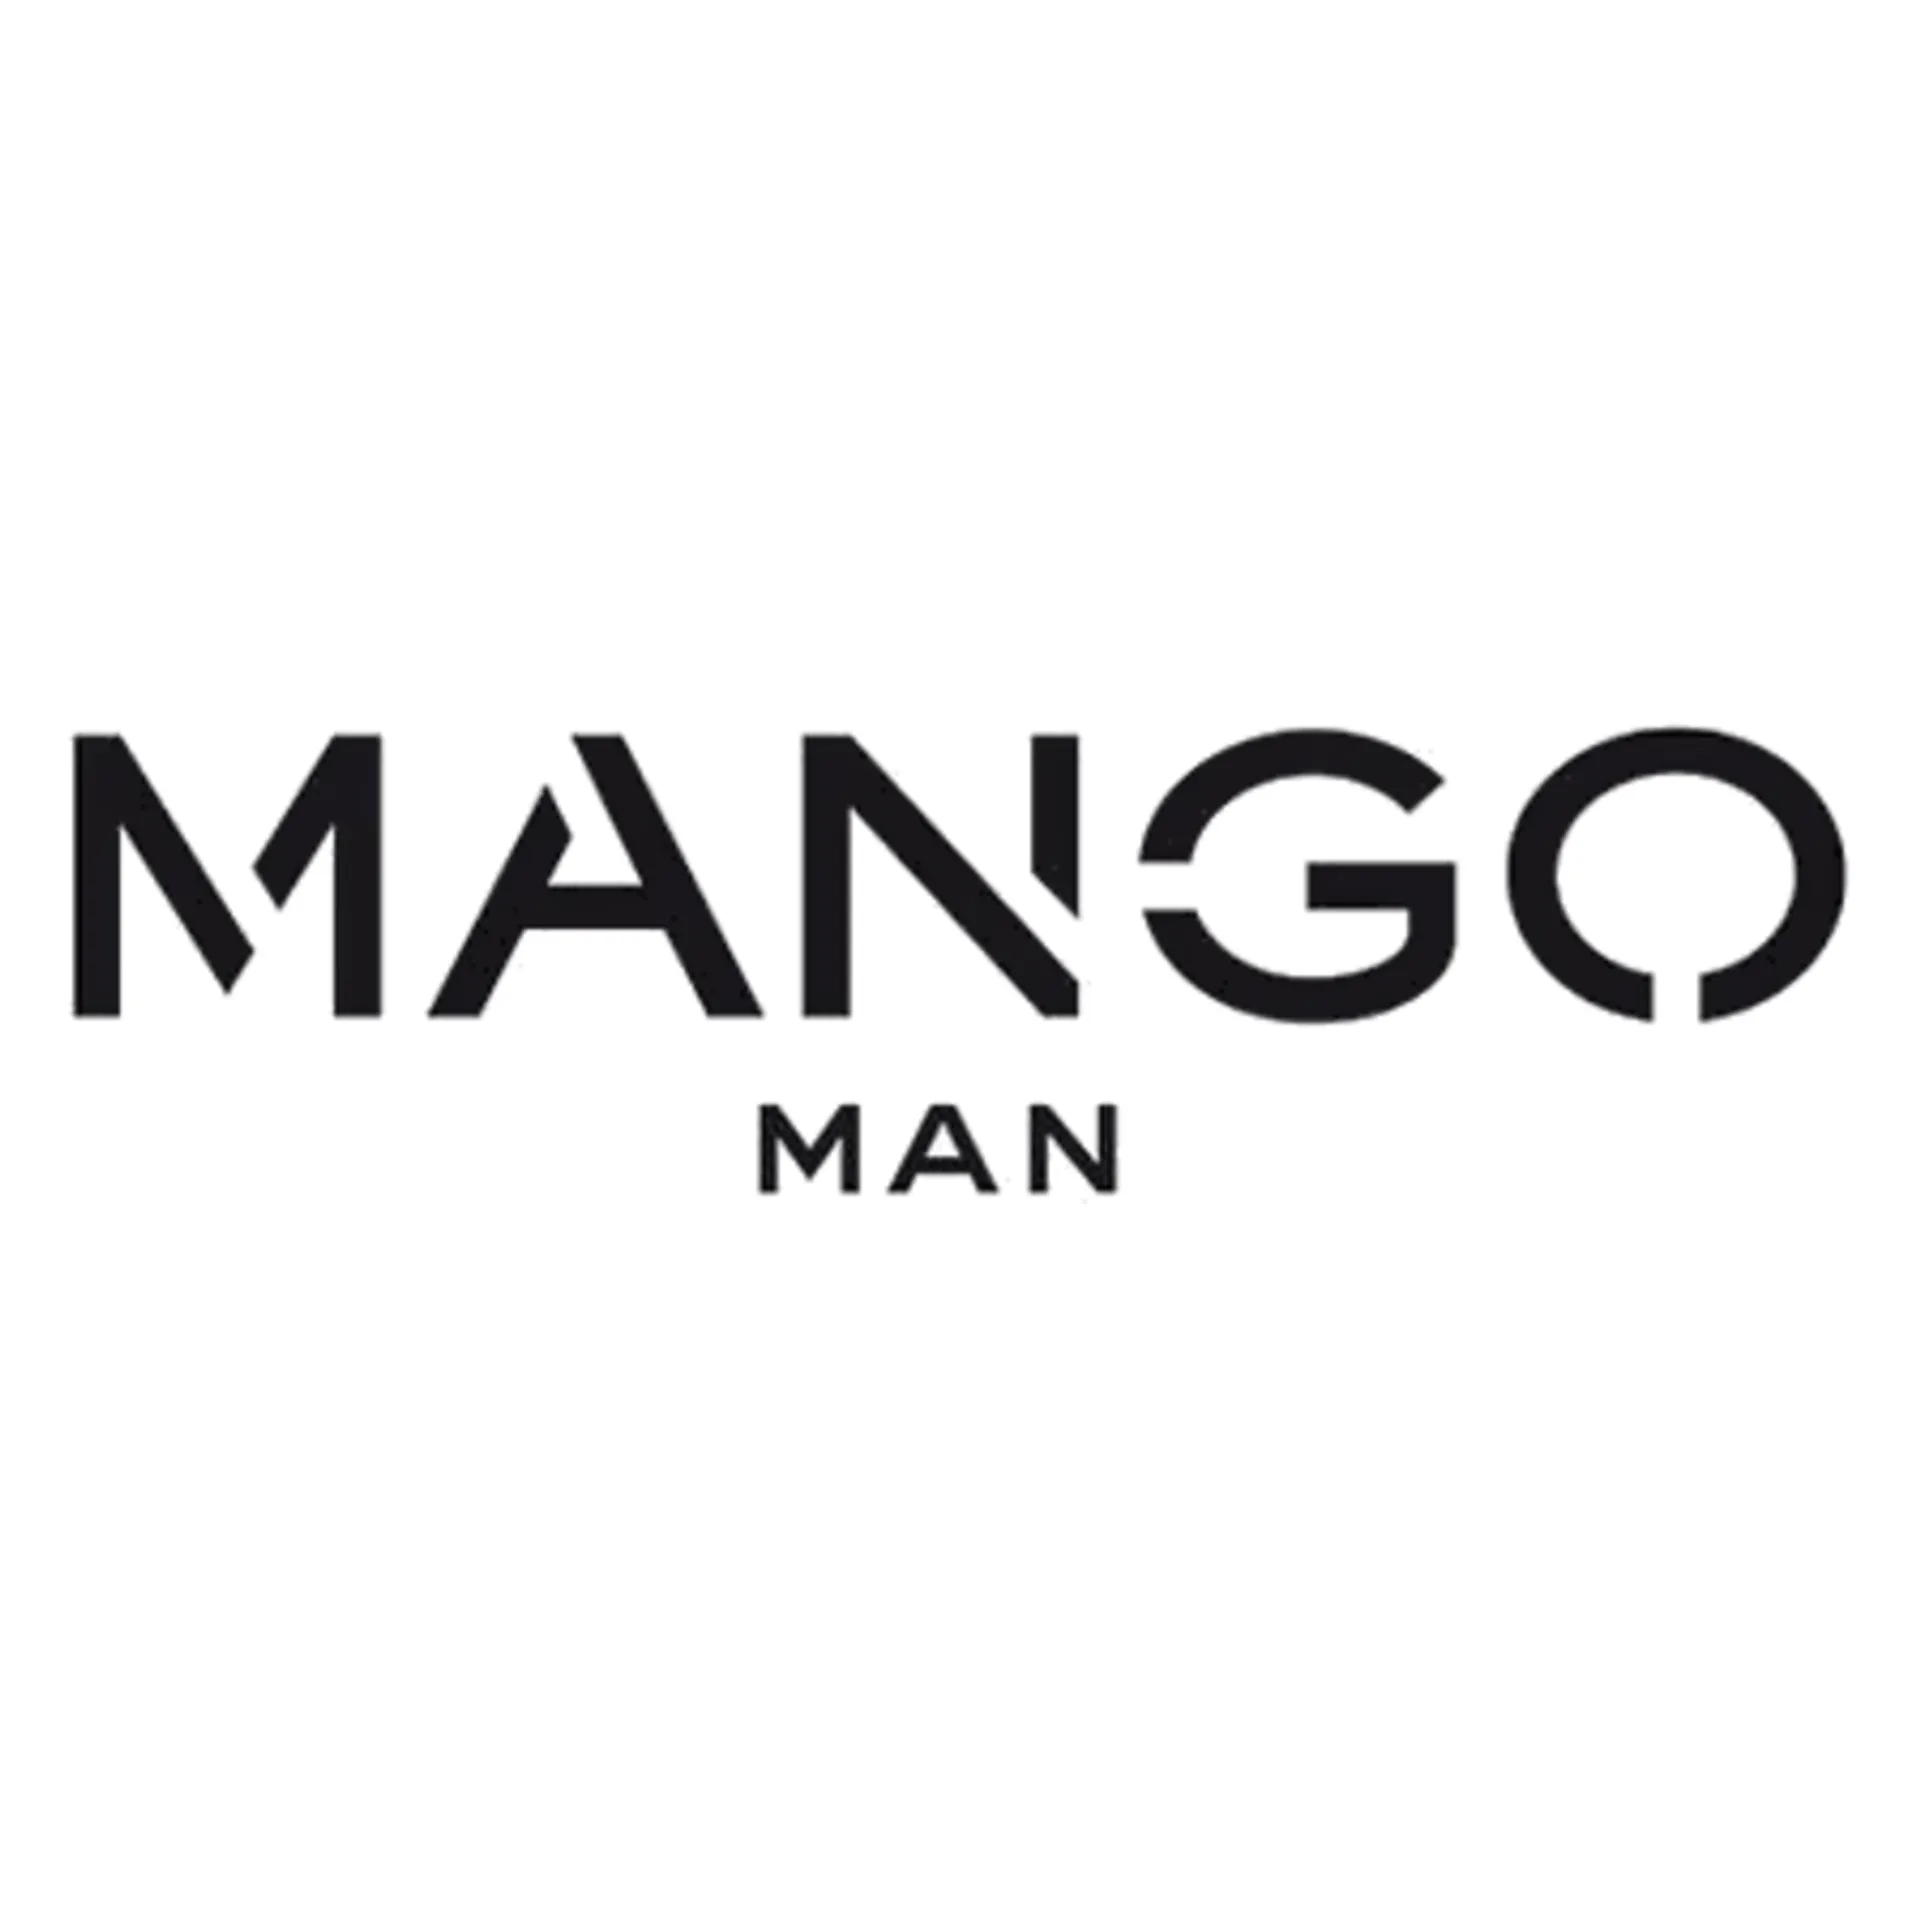 MANGO MAN logo